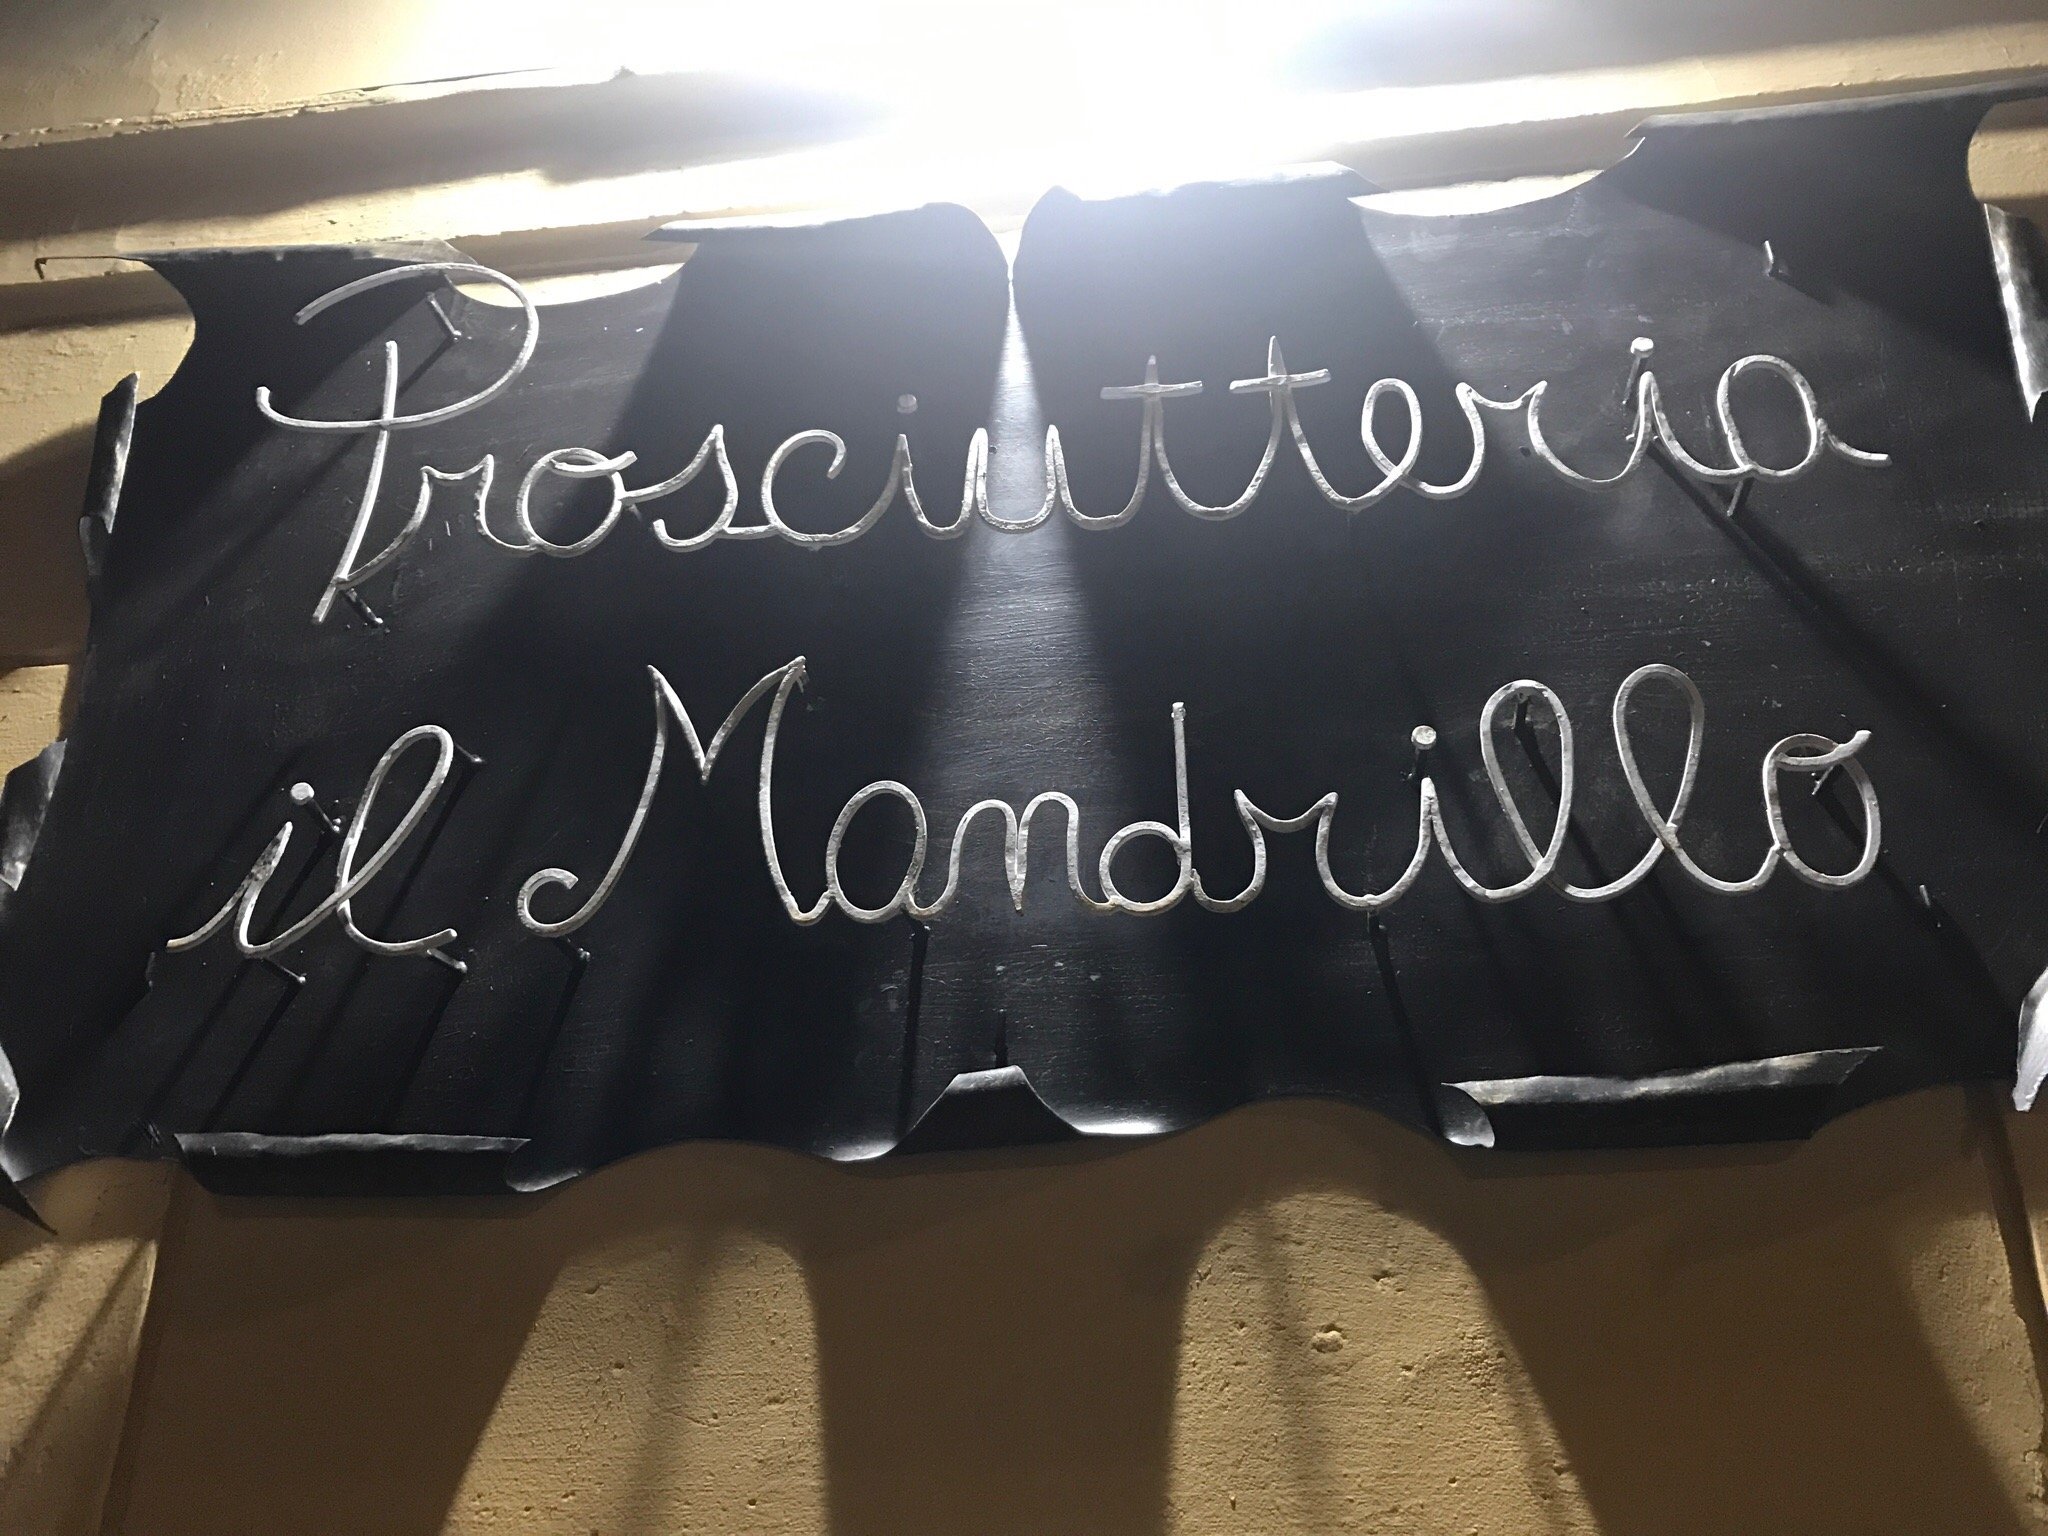 Prosciutteria Il Mandrillo, Pietrasanta